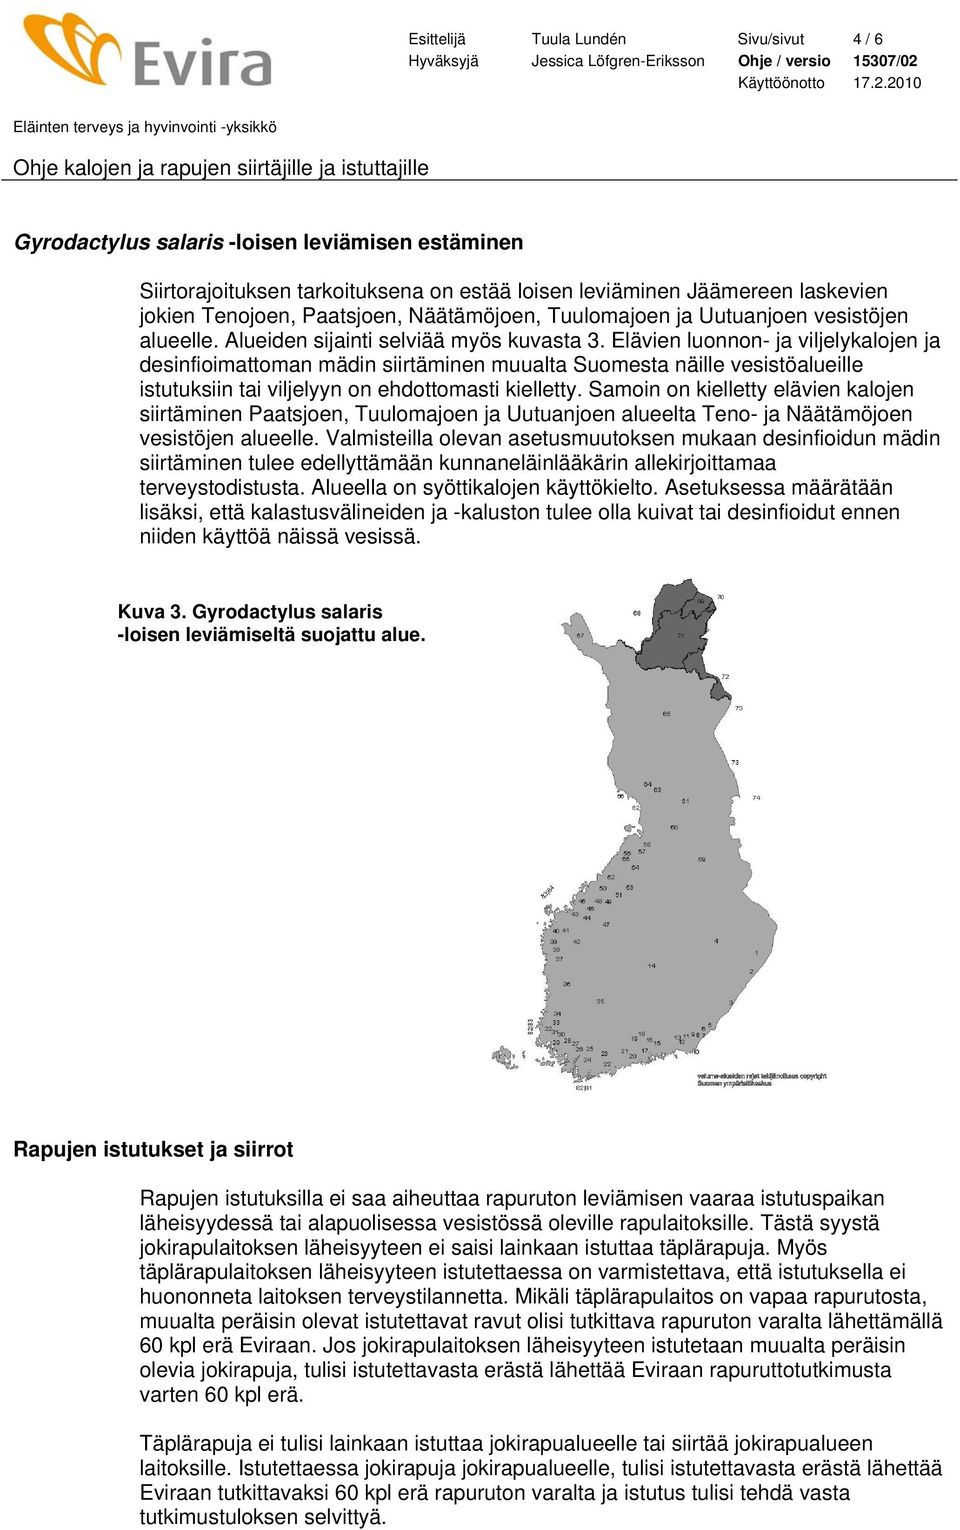 Elävien luonnon- ja viljelykalojen ja desinfioimattoman mädin siirtäminen muualta Suomesta näille vesistöalueille istutuksiin tai viljelyyn on ehdottomasti kielletty.